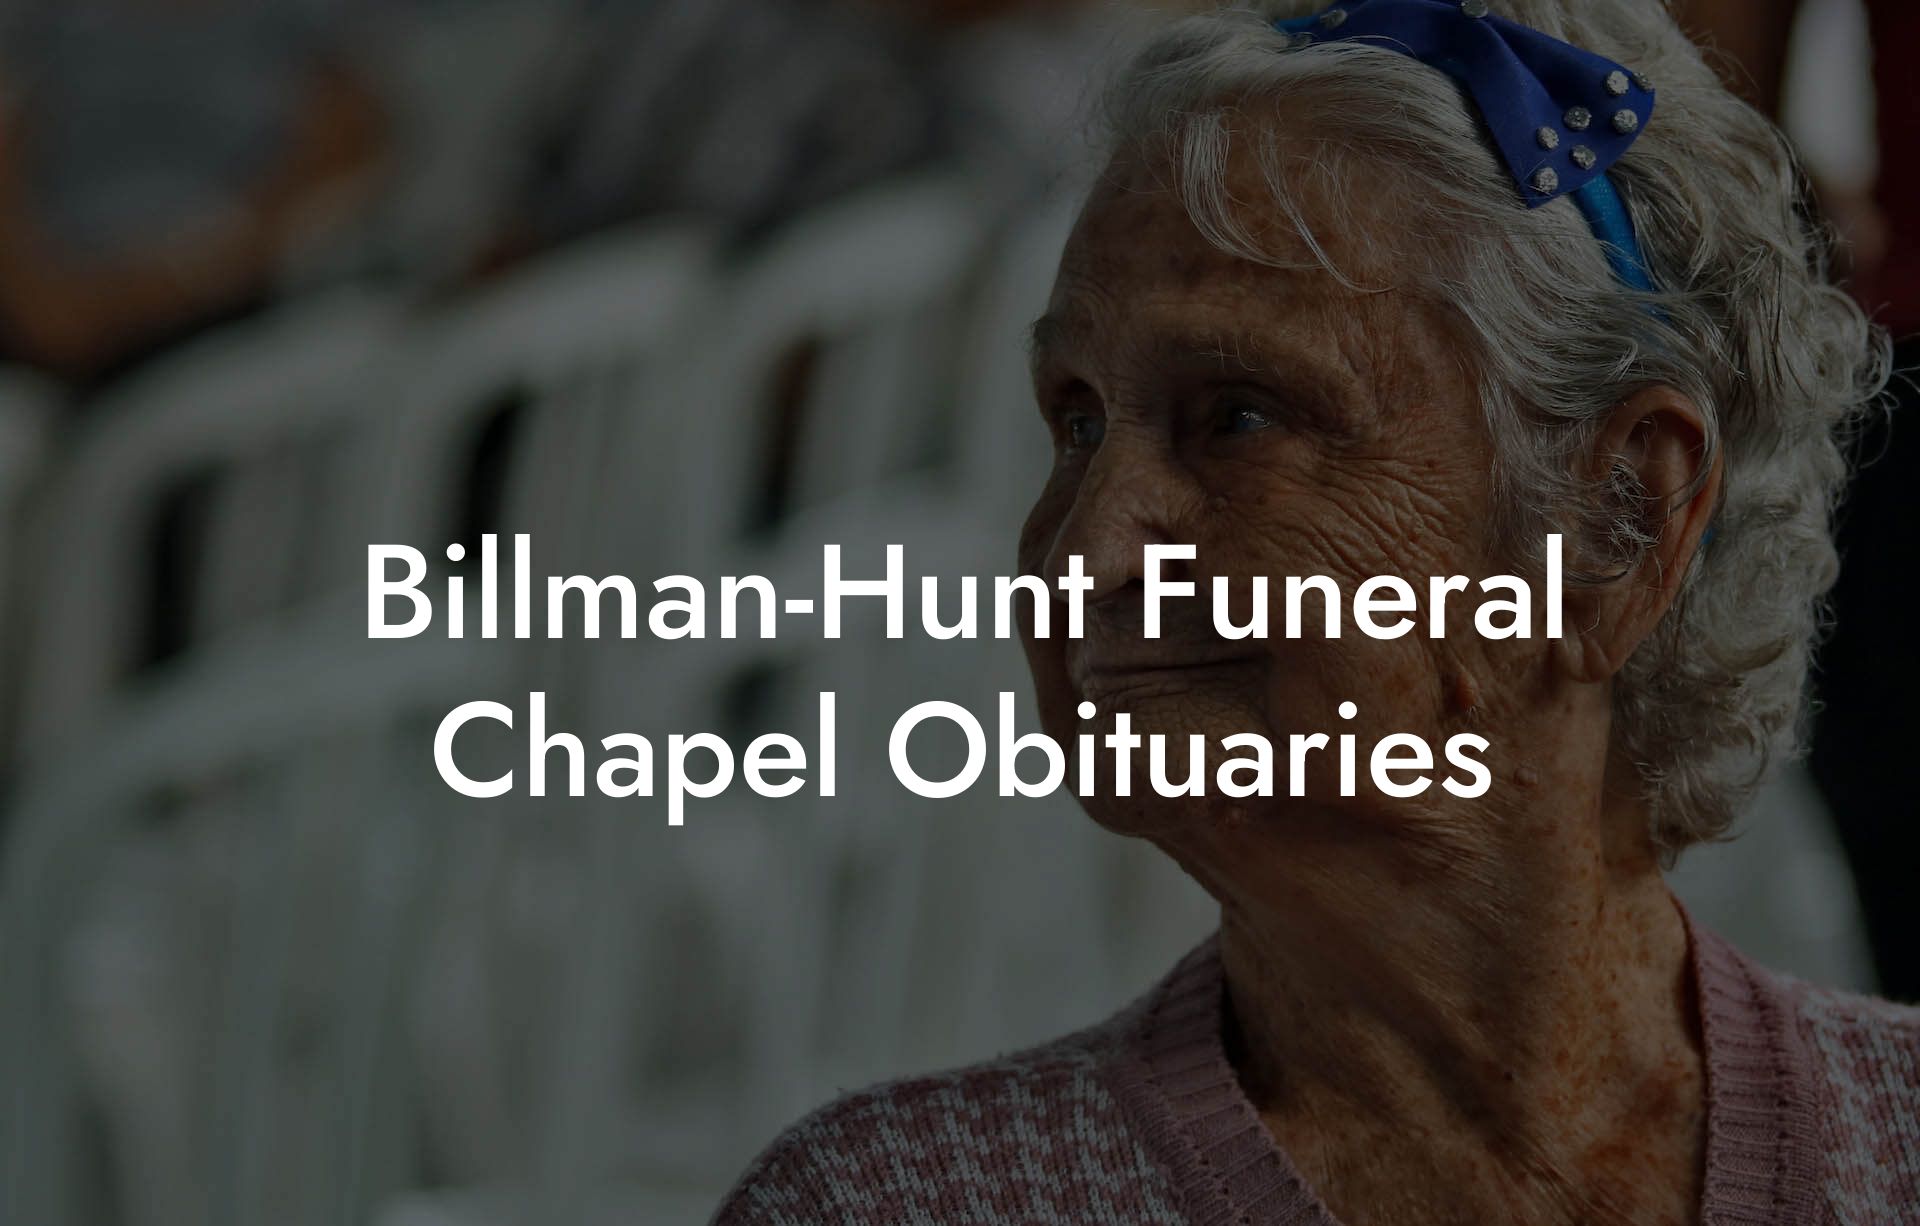 Billman-Hunt Funeral Chapel Obituaries